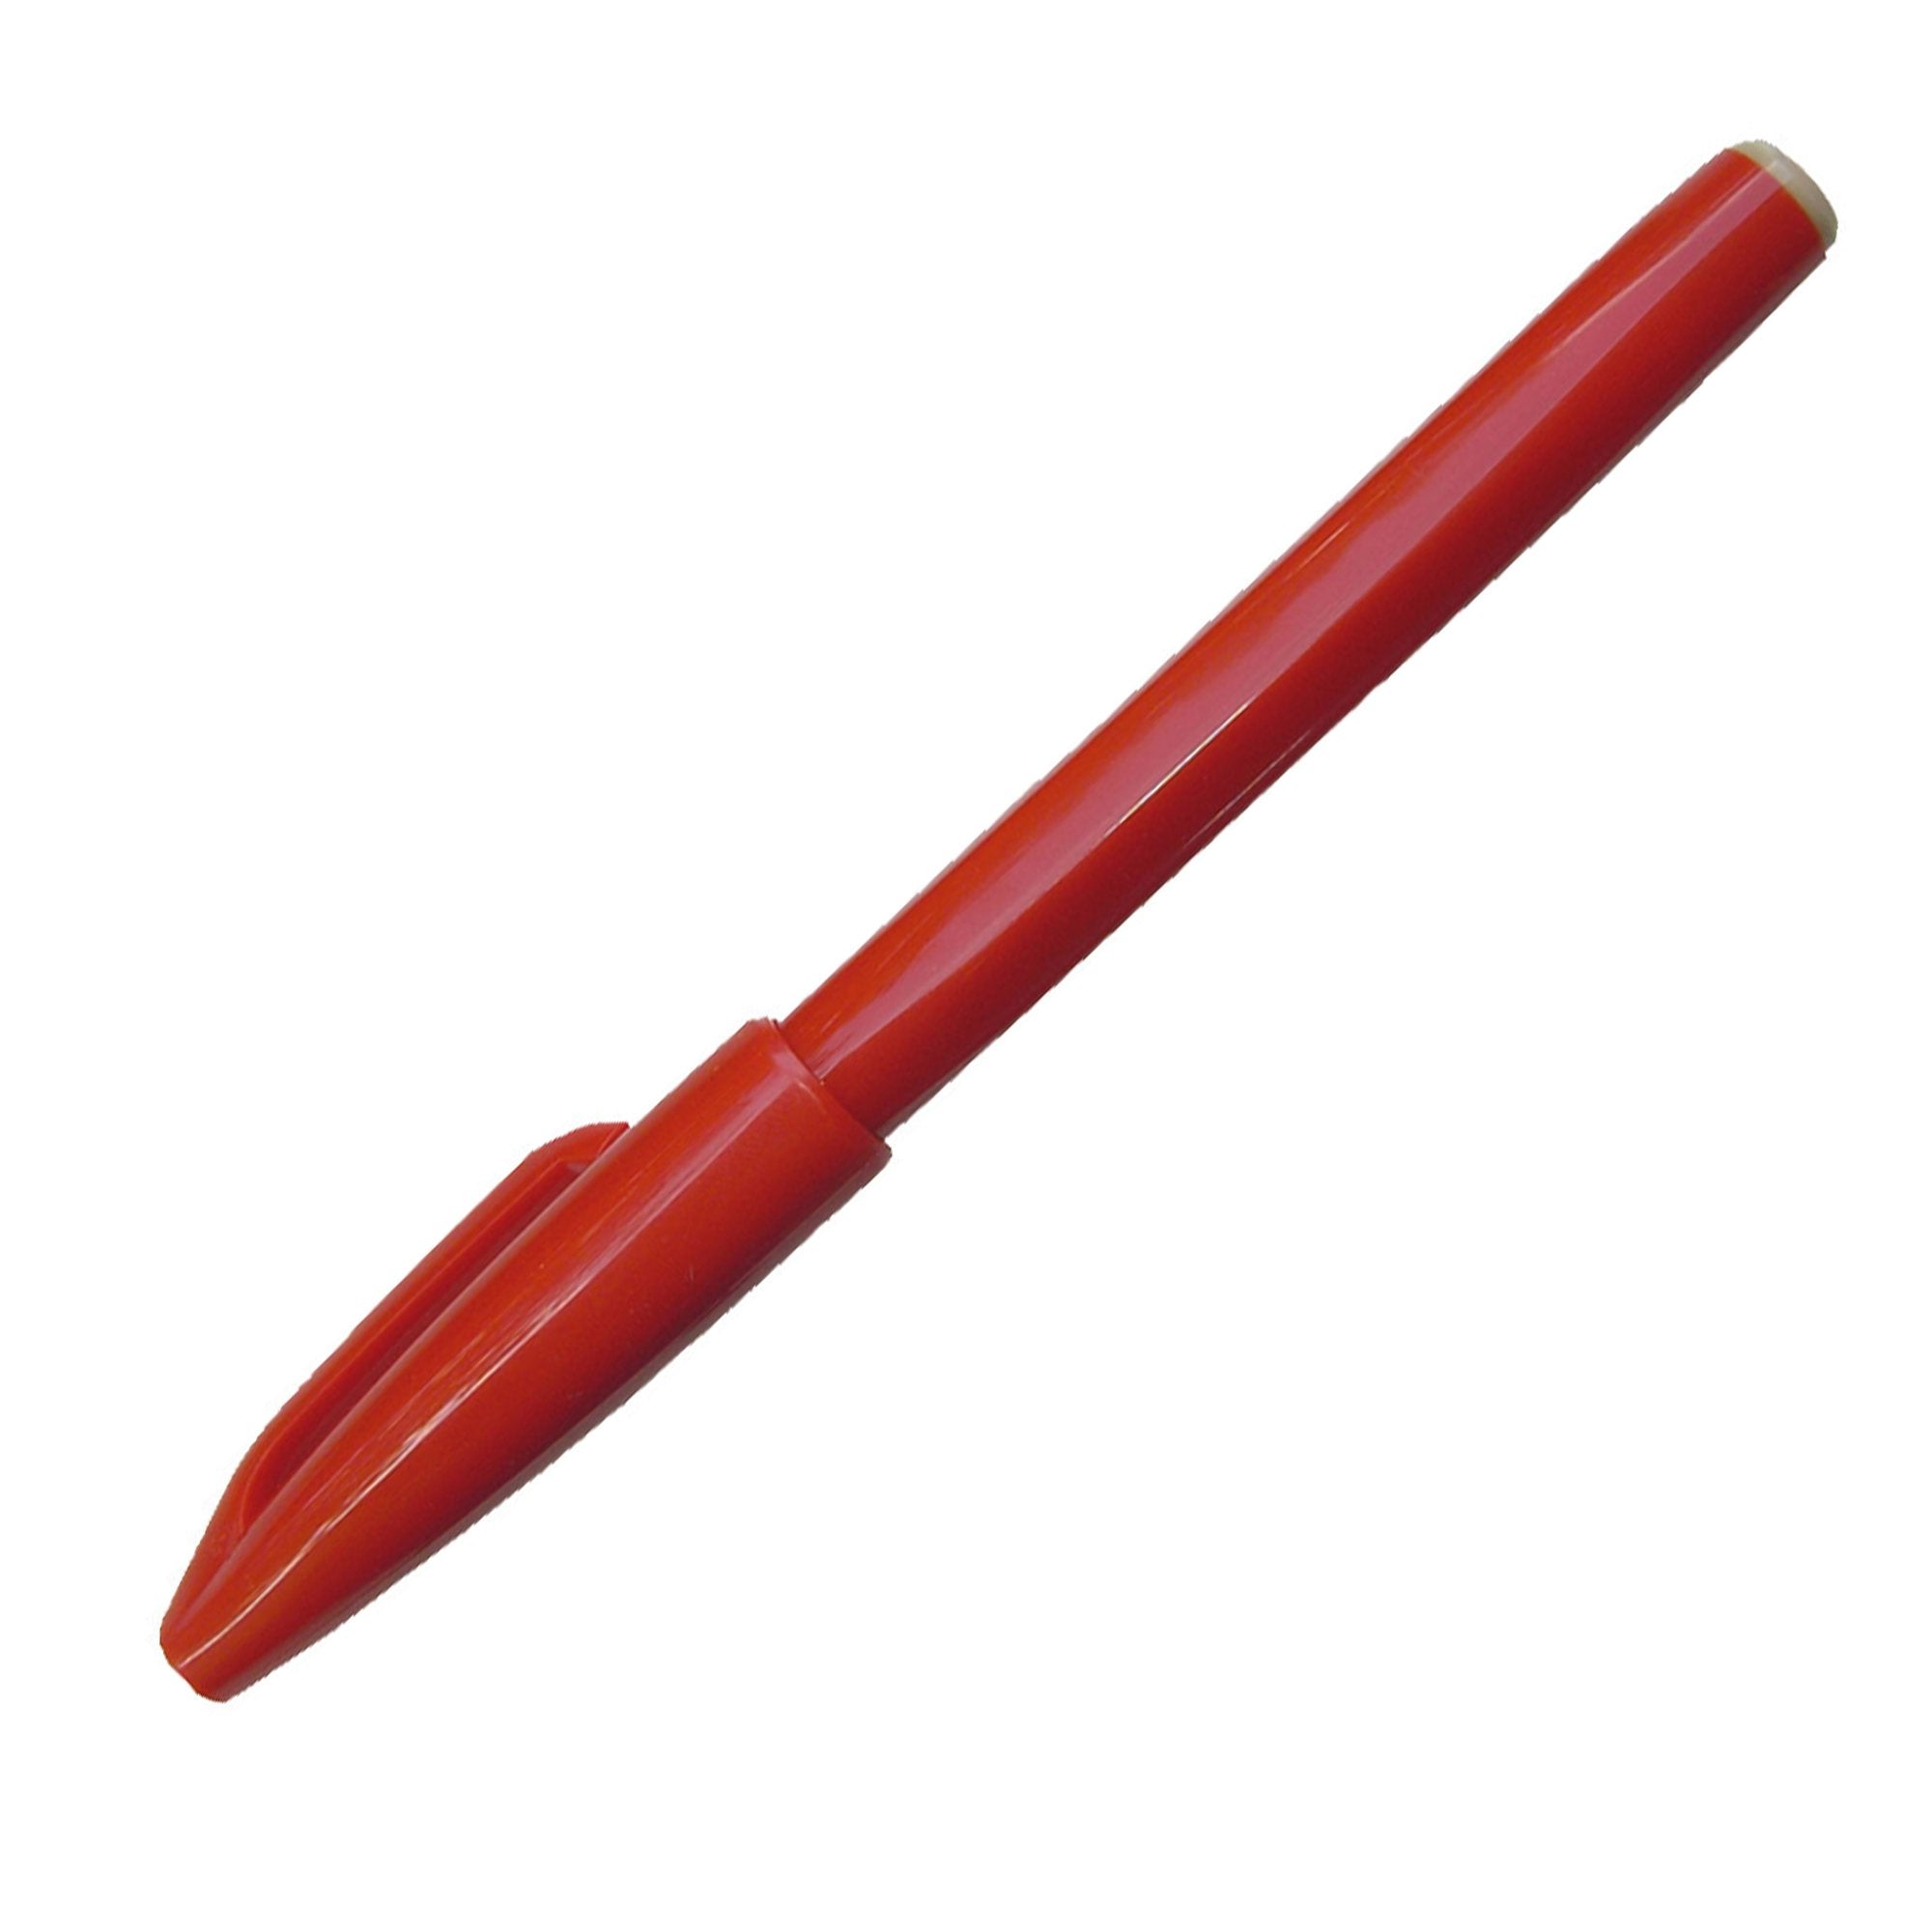 pentel-pennarello-signpen-s520-rosso